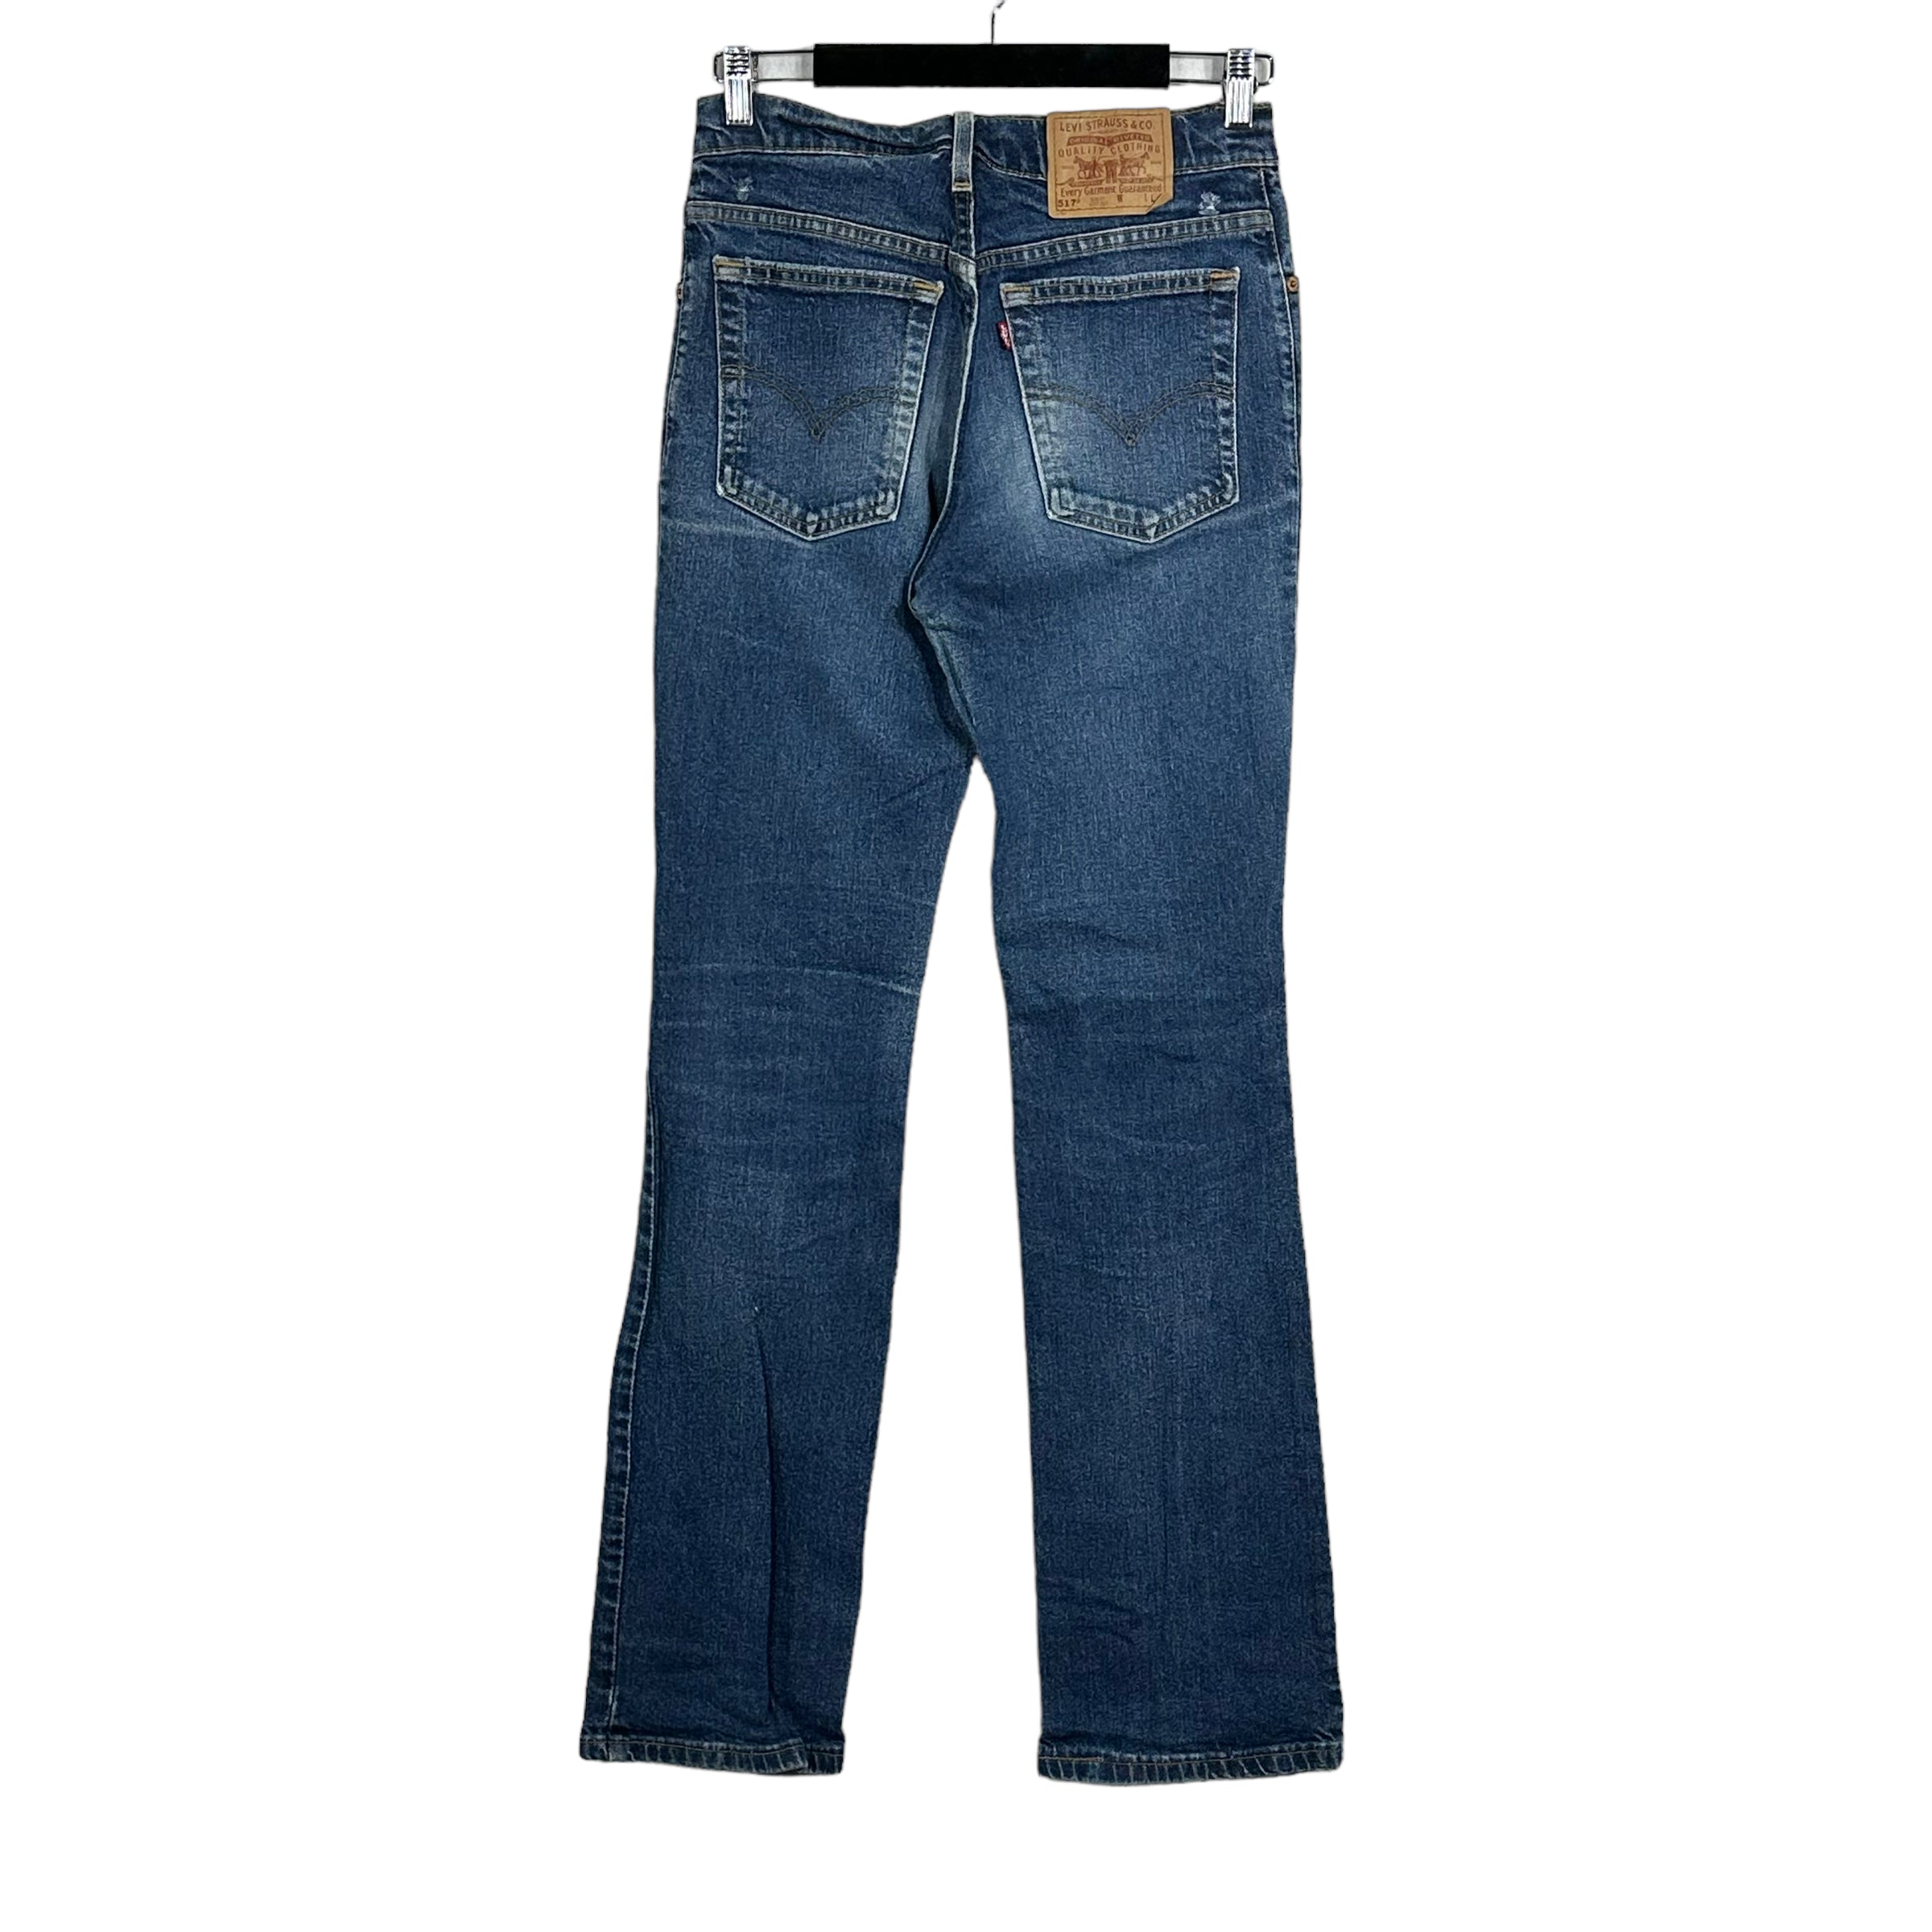 Vintage Levis 517 Slim Fit Boot Cut Jeans